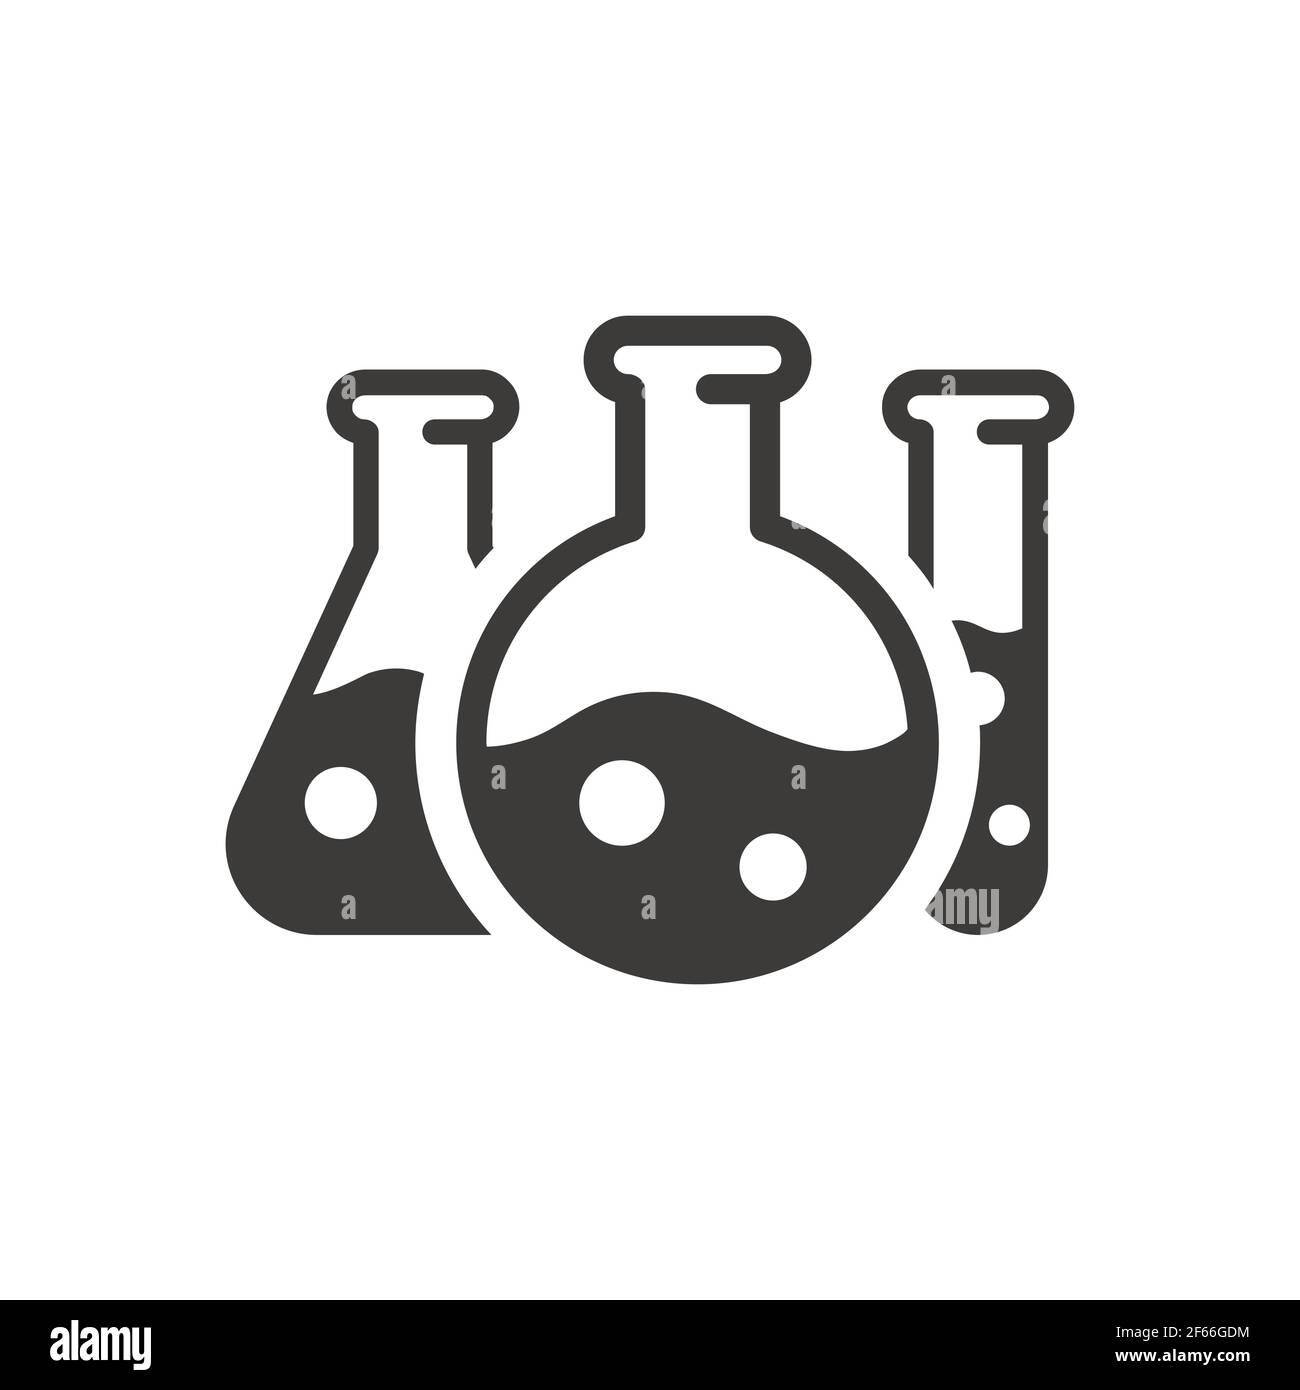 Schwarzes Vektorsymbol für Teströhrchen. Laborflaschen, Chemie-Symbol. Stock Vektor